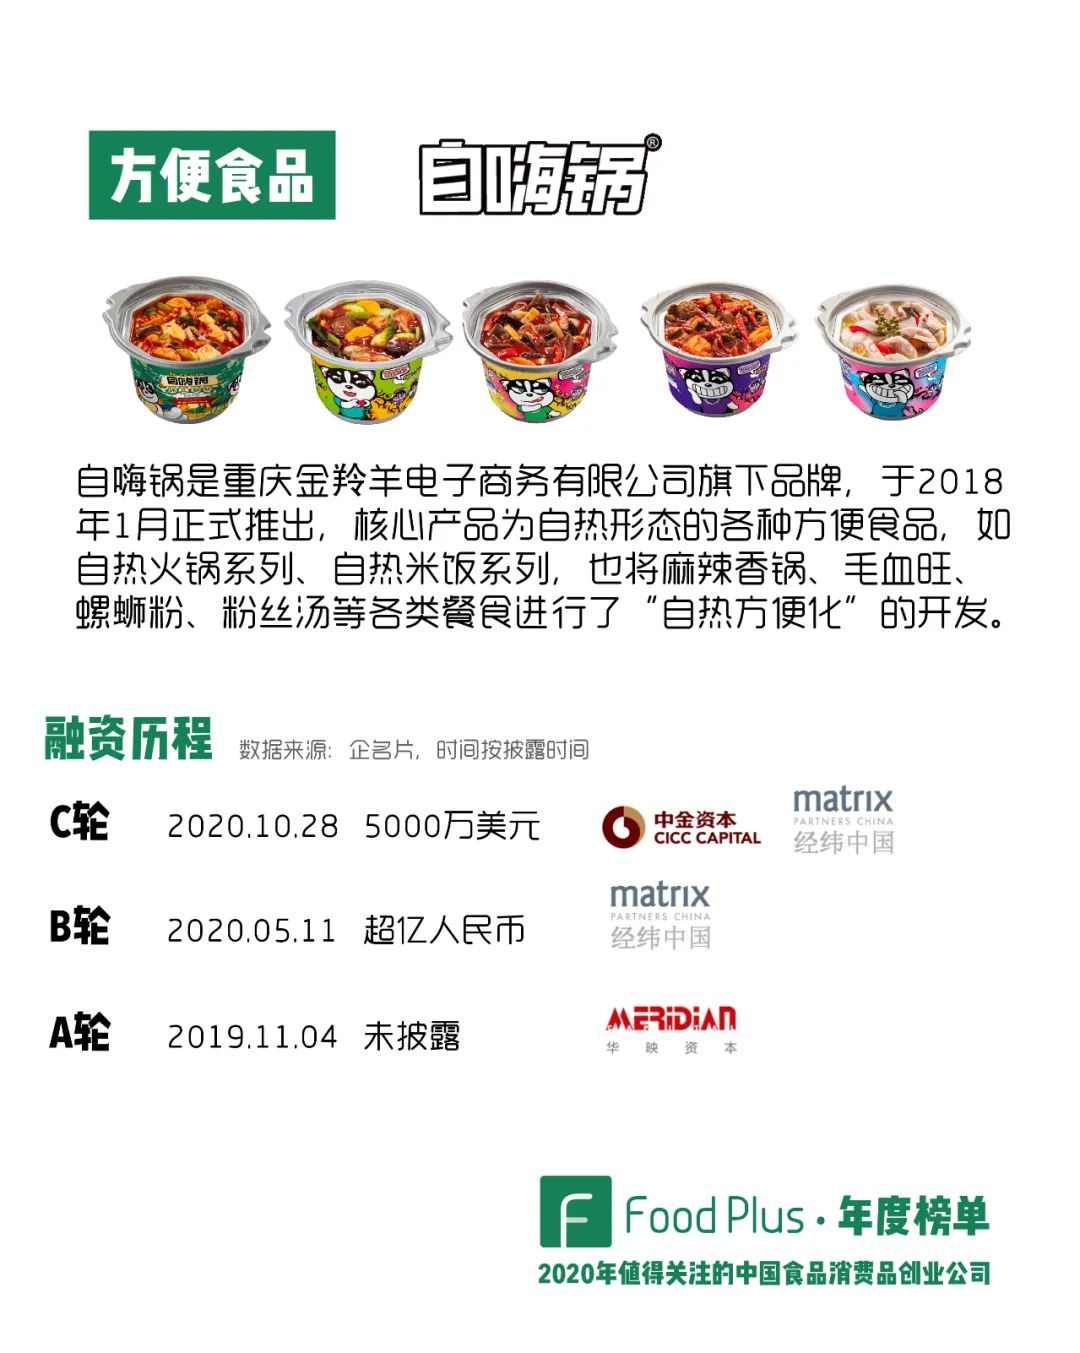 在《2018年值得关注的中国食品消费品创业公司 | FoodPlus·年度榜单》中，我们站在自热型方便食品的角度对自嗨锅进行了分析，当时自嗨锅增长迅猛，同时也还没有融资。而在2年后的今天来进行判断，自